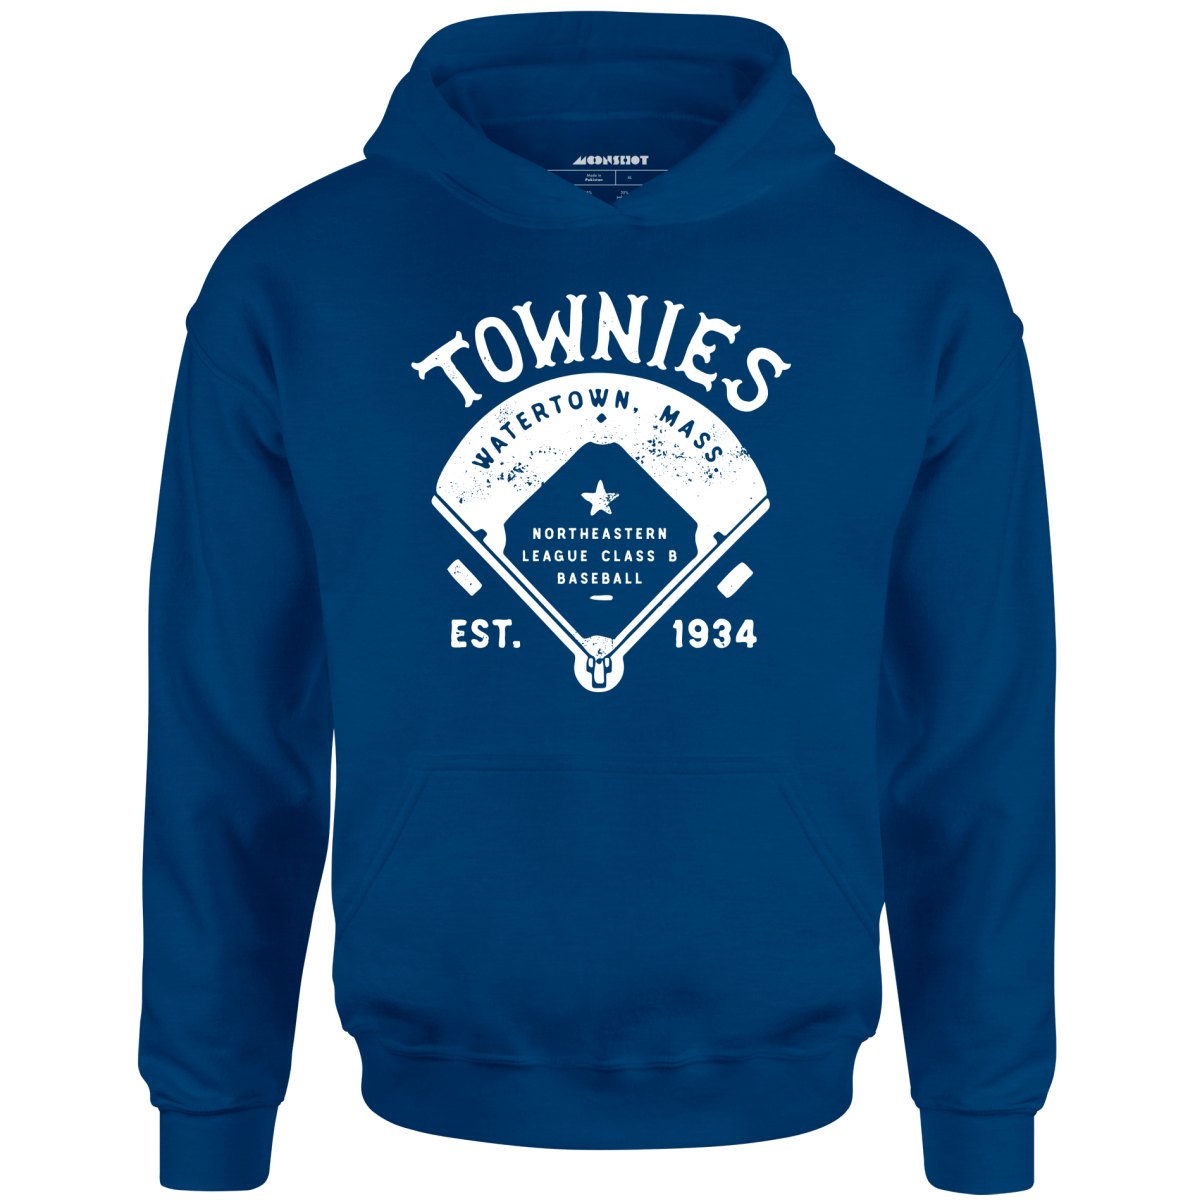 Watertown Townies - Massachusetts - Vintage Defunct Baseball Teams - Unisex Hoodie